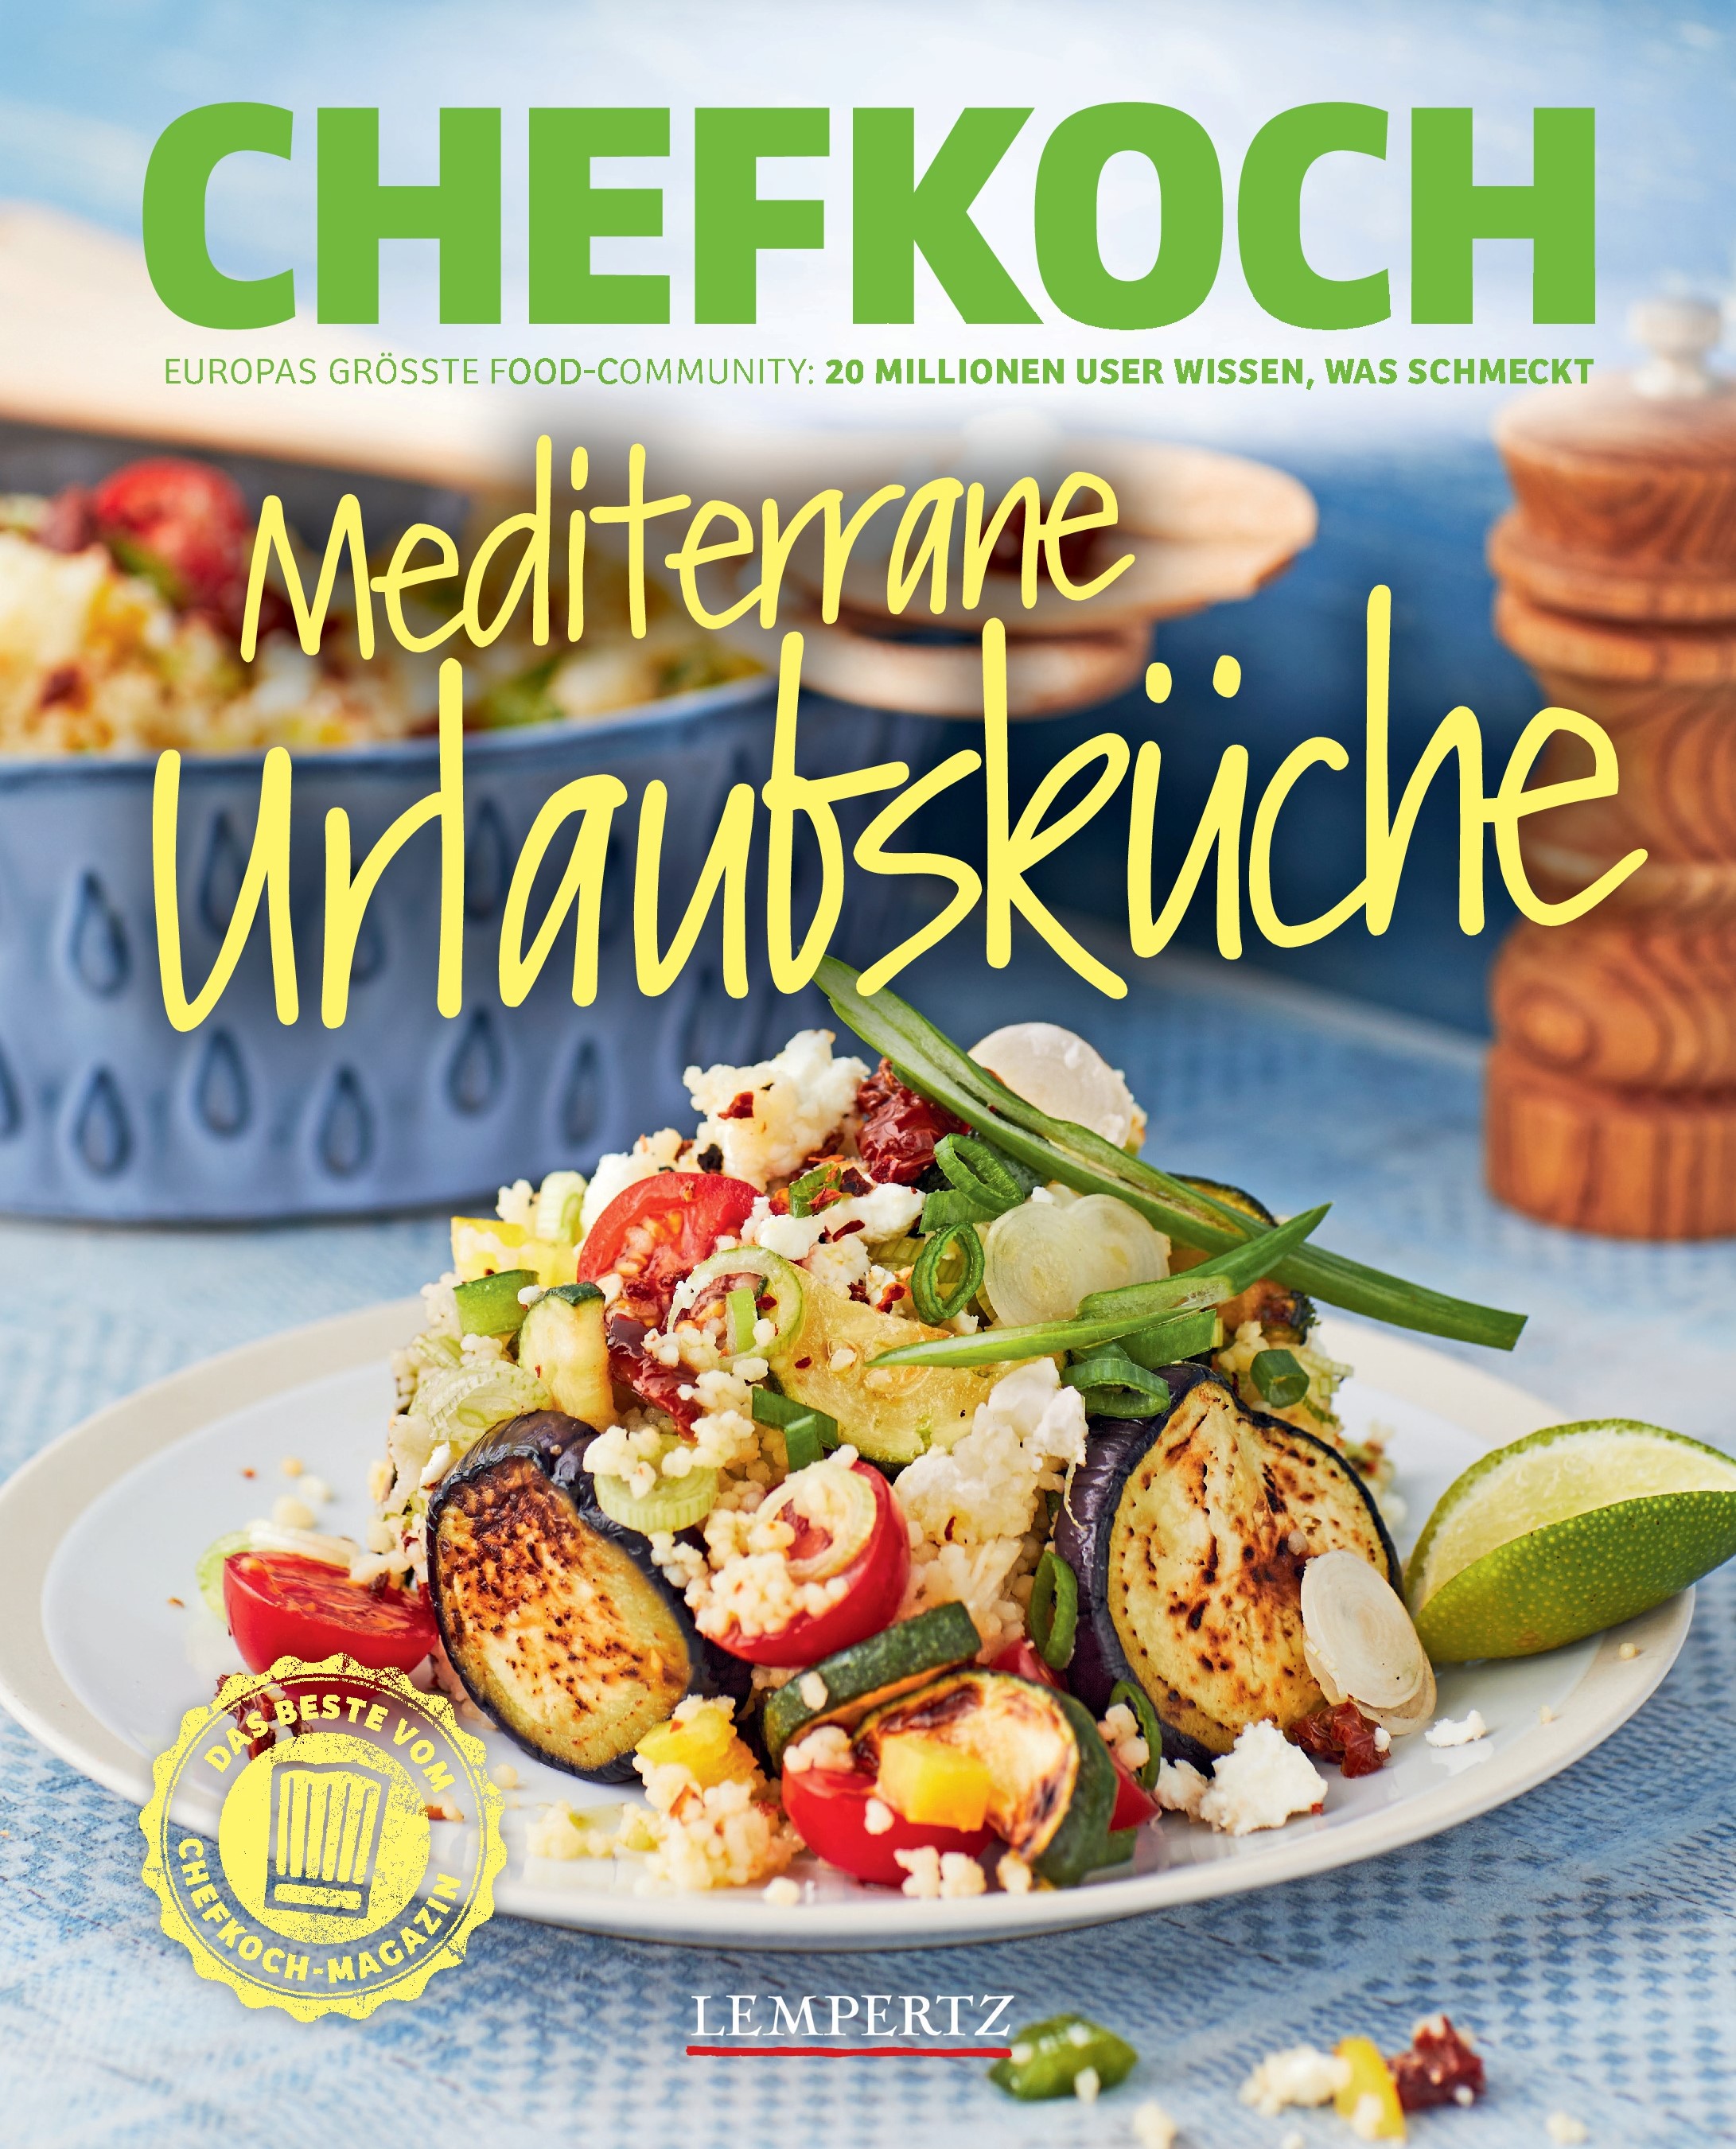 Chefkoch-Buch "Mediterrane Urlaubsküche"